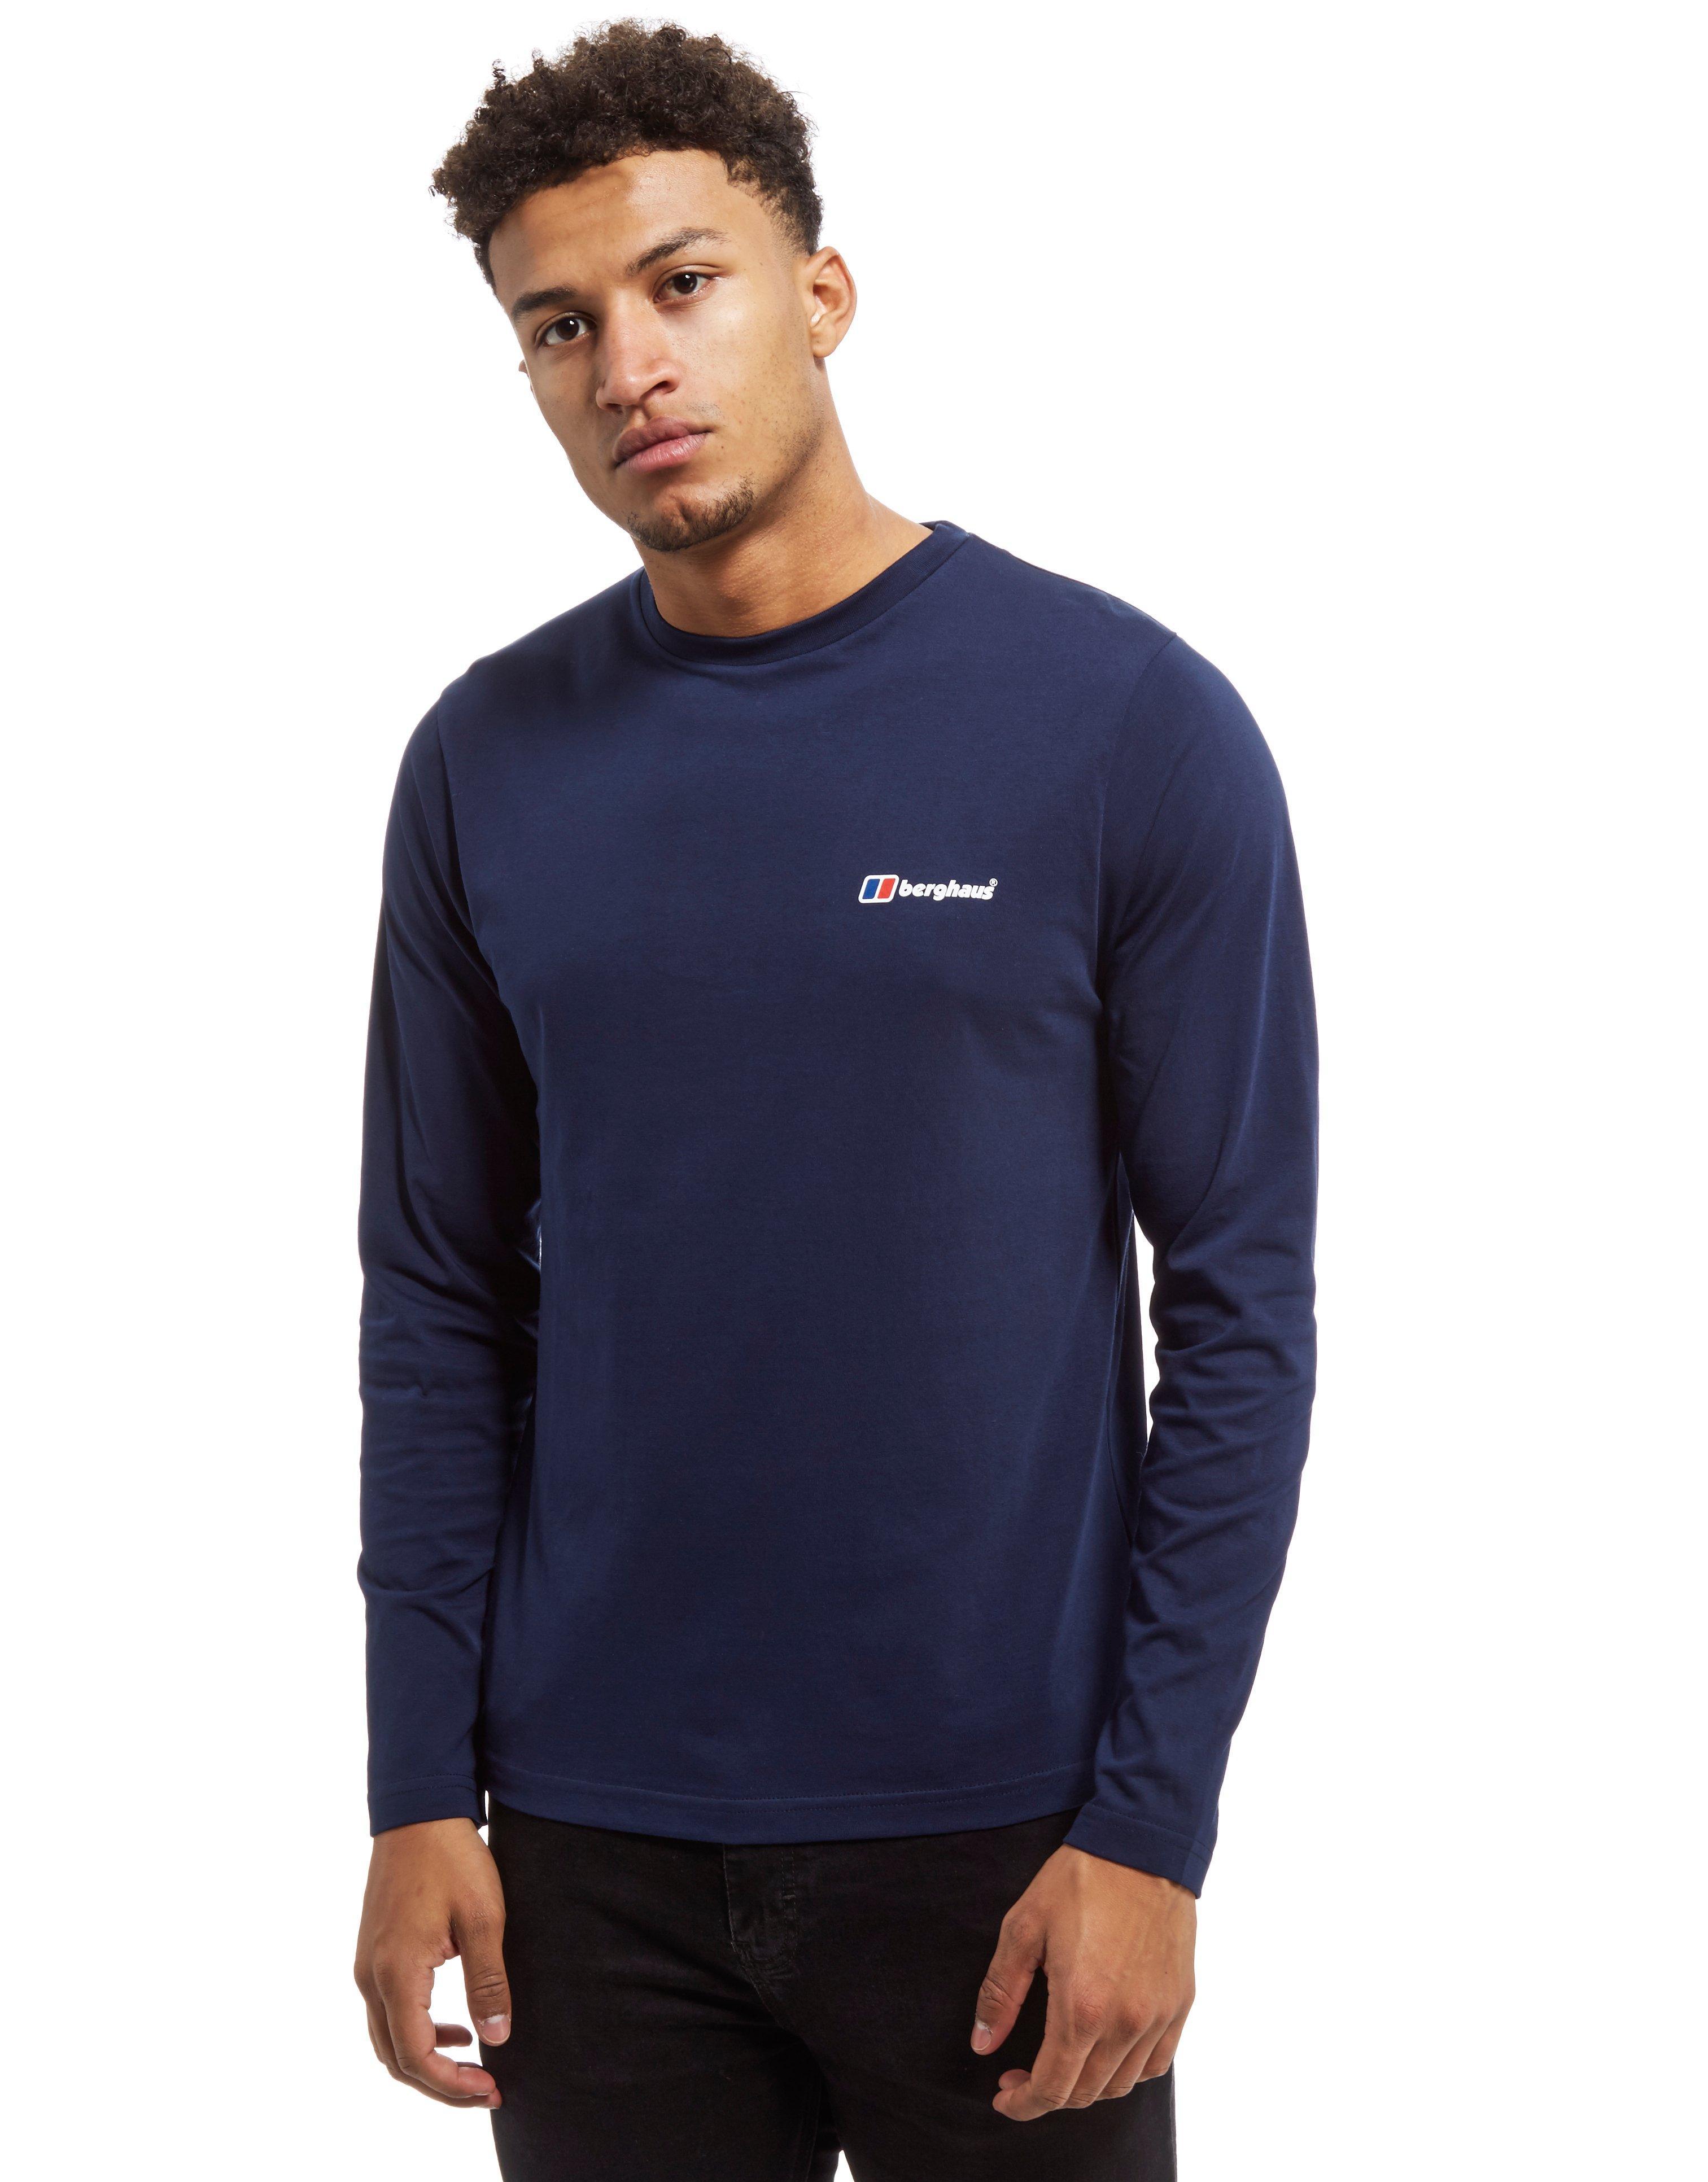 Berghaus Cotton Back Logo Long Sleeve T-shirt in Navy (Blue) for Men - Lyst